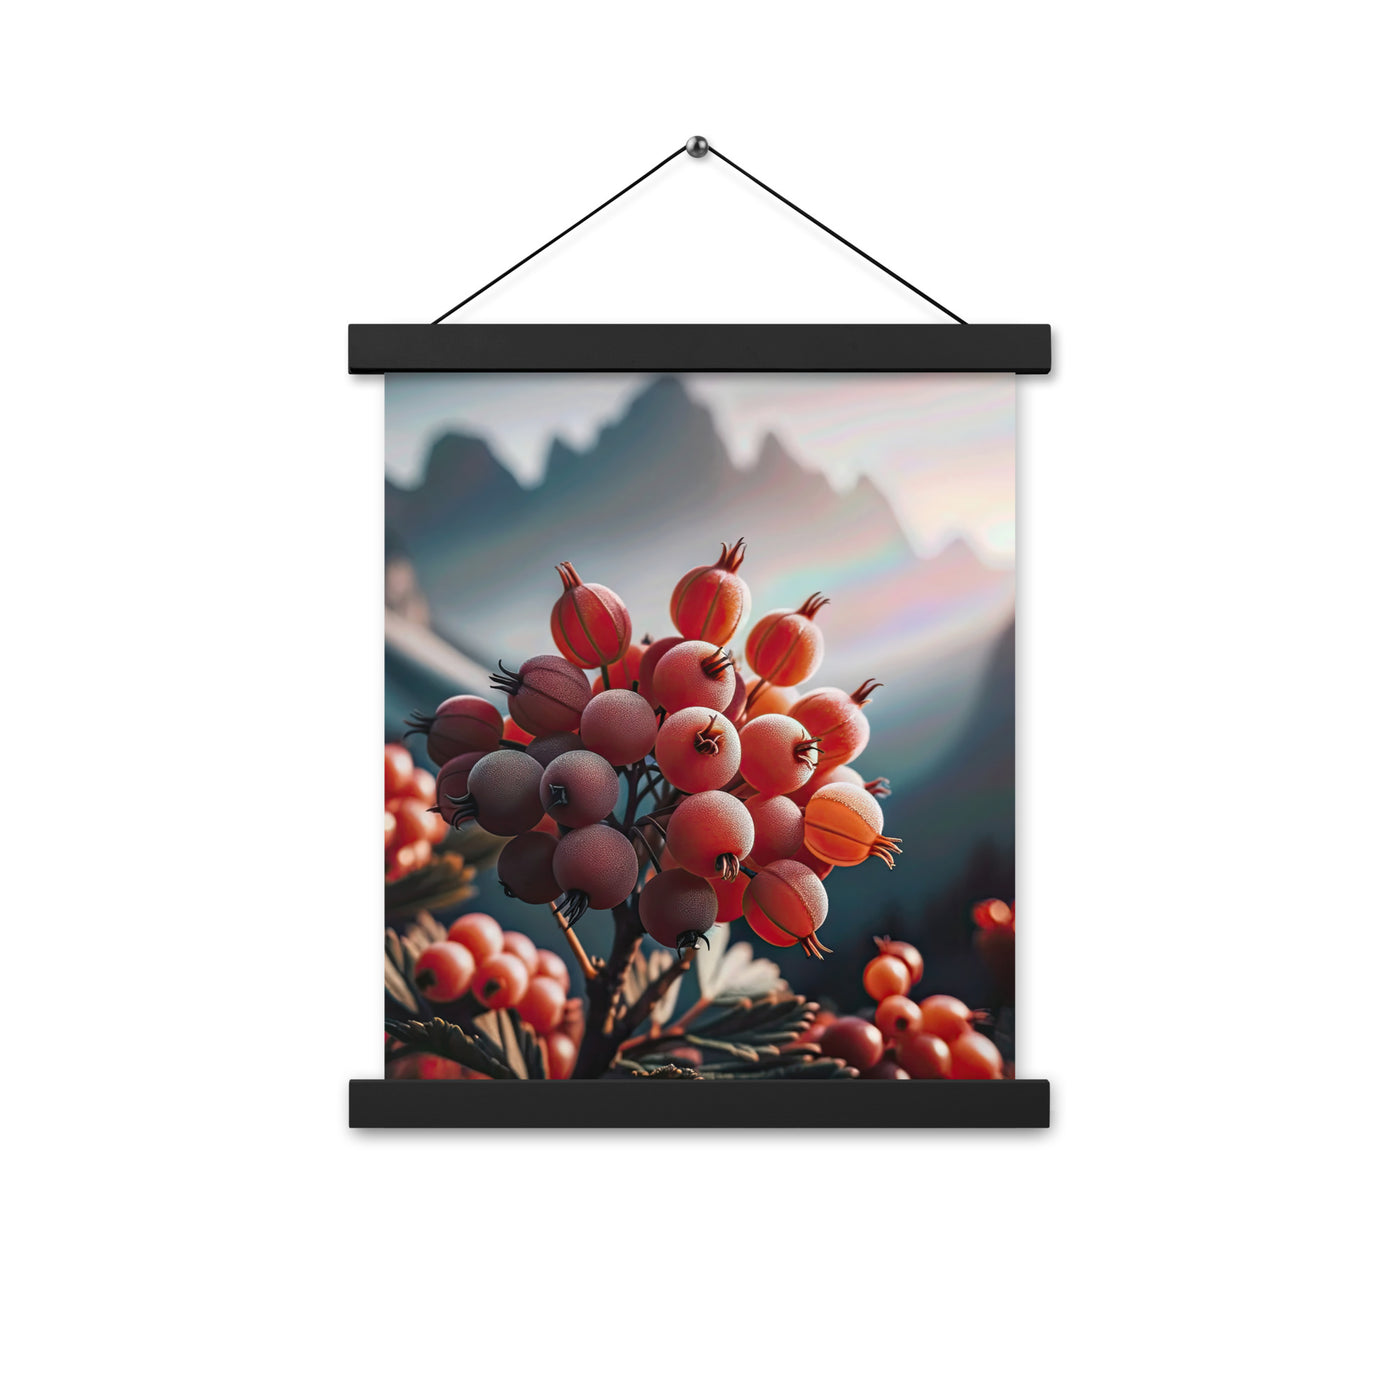 Foto einer Gruppe von Alpenbeeren mit kräftigen Farben und detaillierten Texturen - Premium Poster mit Aufhängung berge xxx yyy zzz 27.9 x 35.6 cm